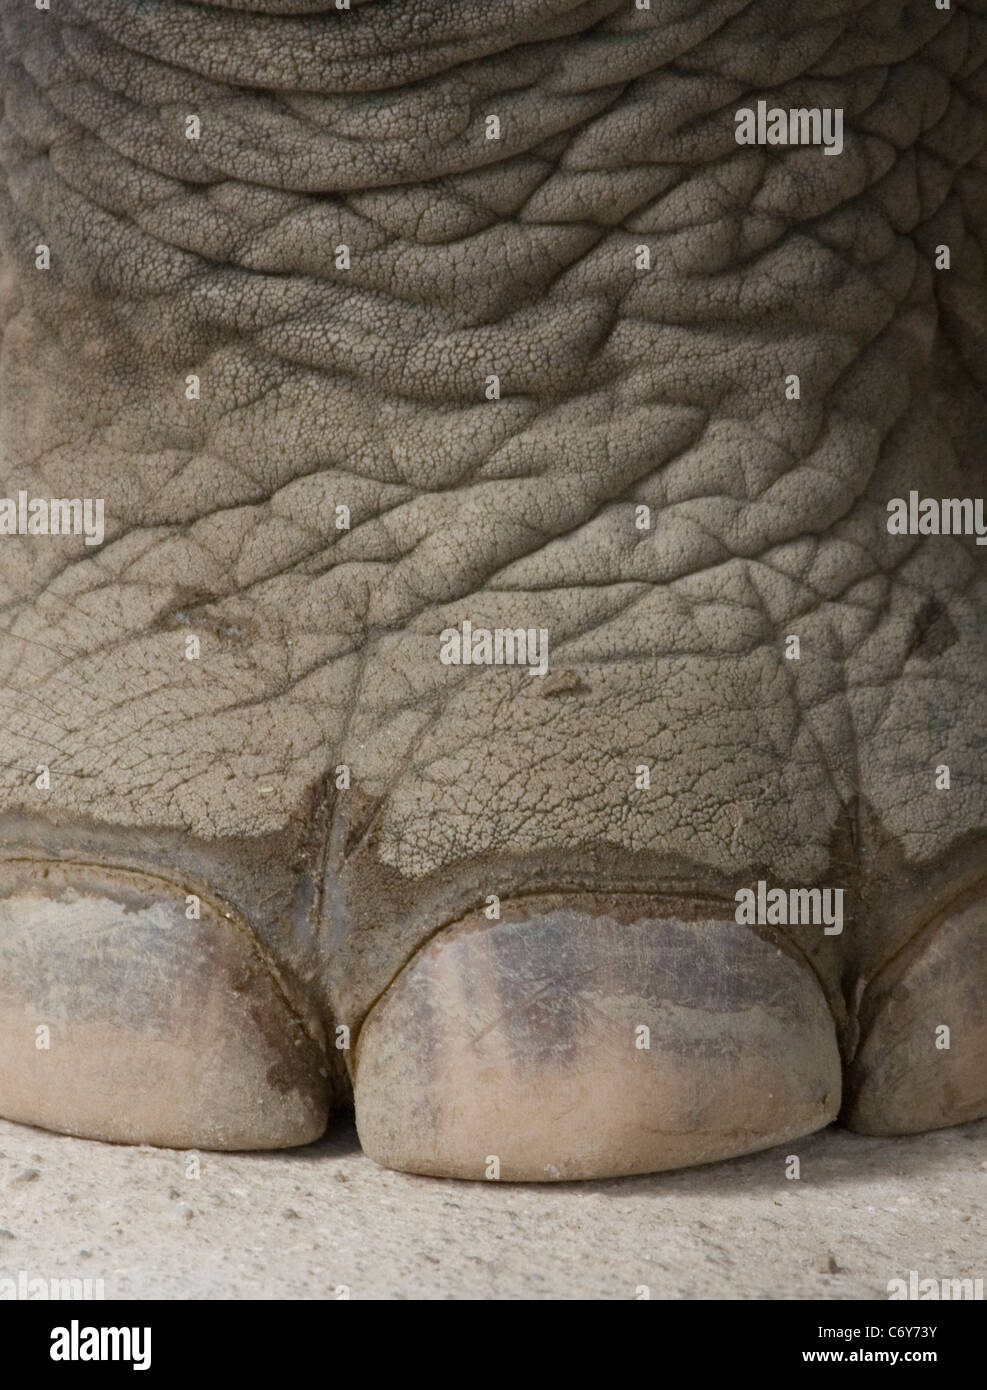 Di elefante unghie dei piedi Foto Stock